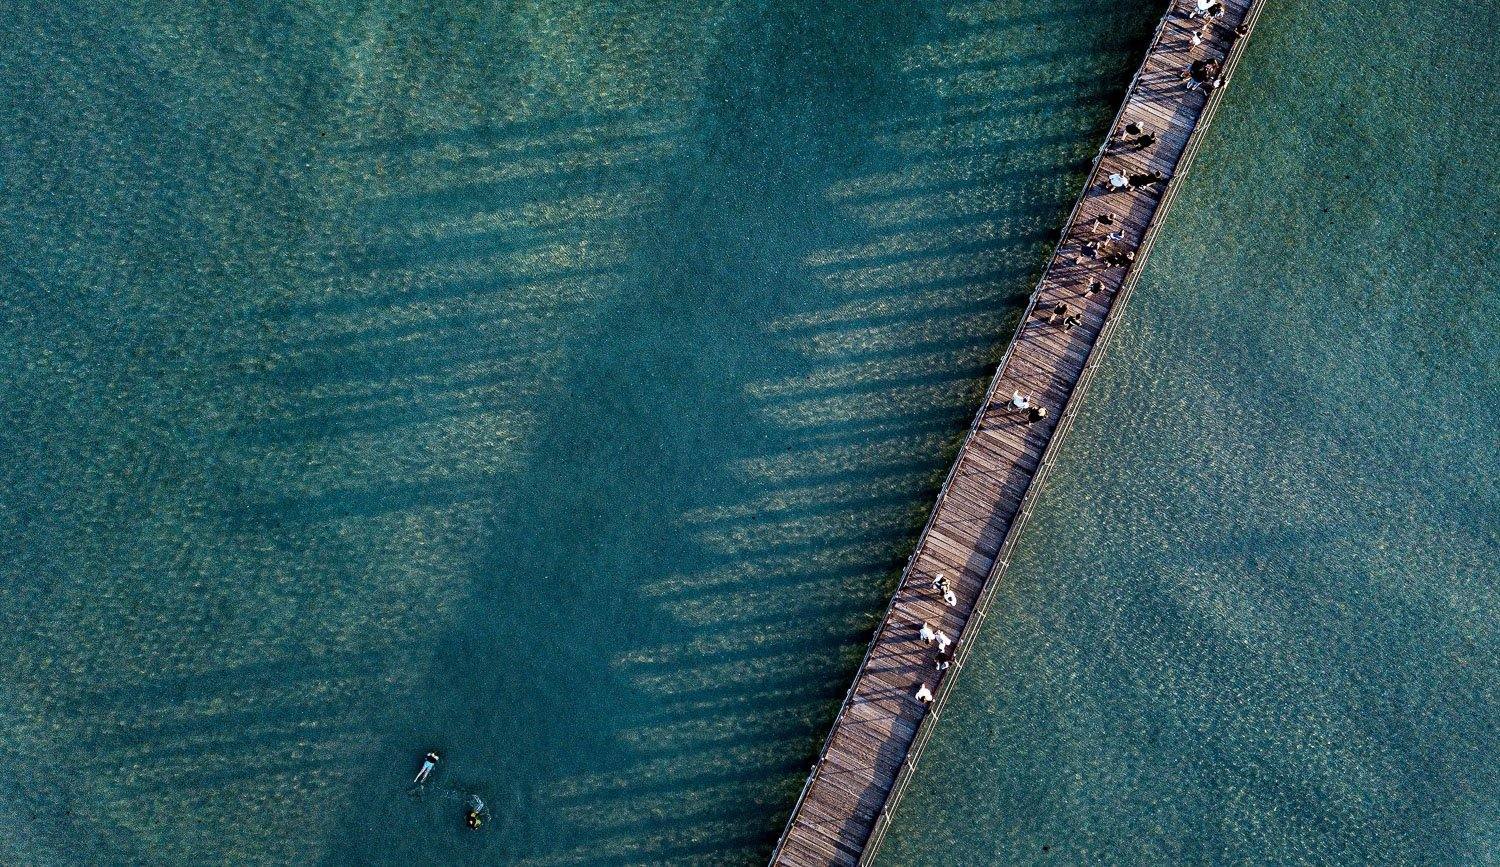 Aerial view of an ocean with a wooden bridge over, Shadows - Mornington Peninsula VIC